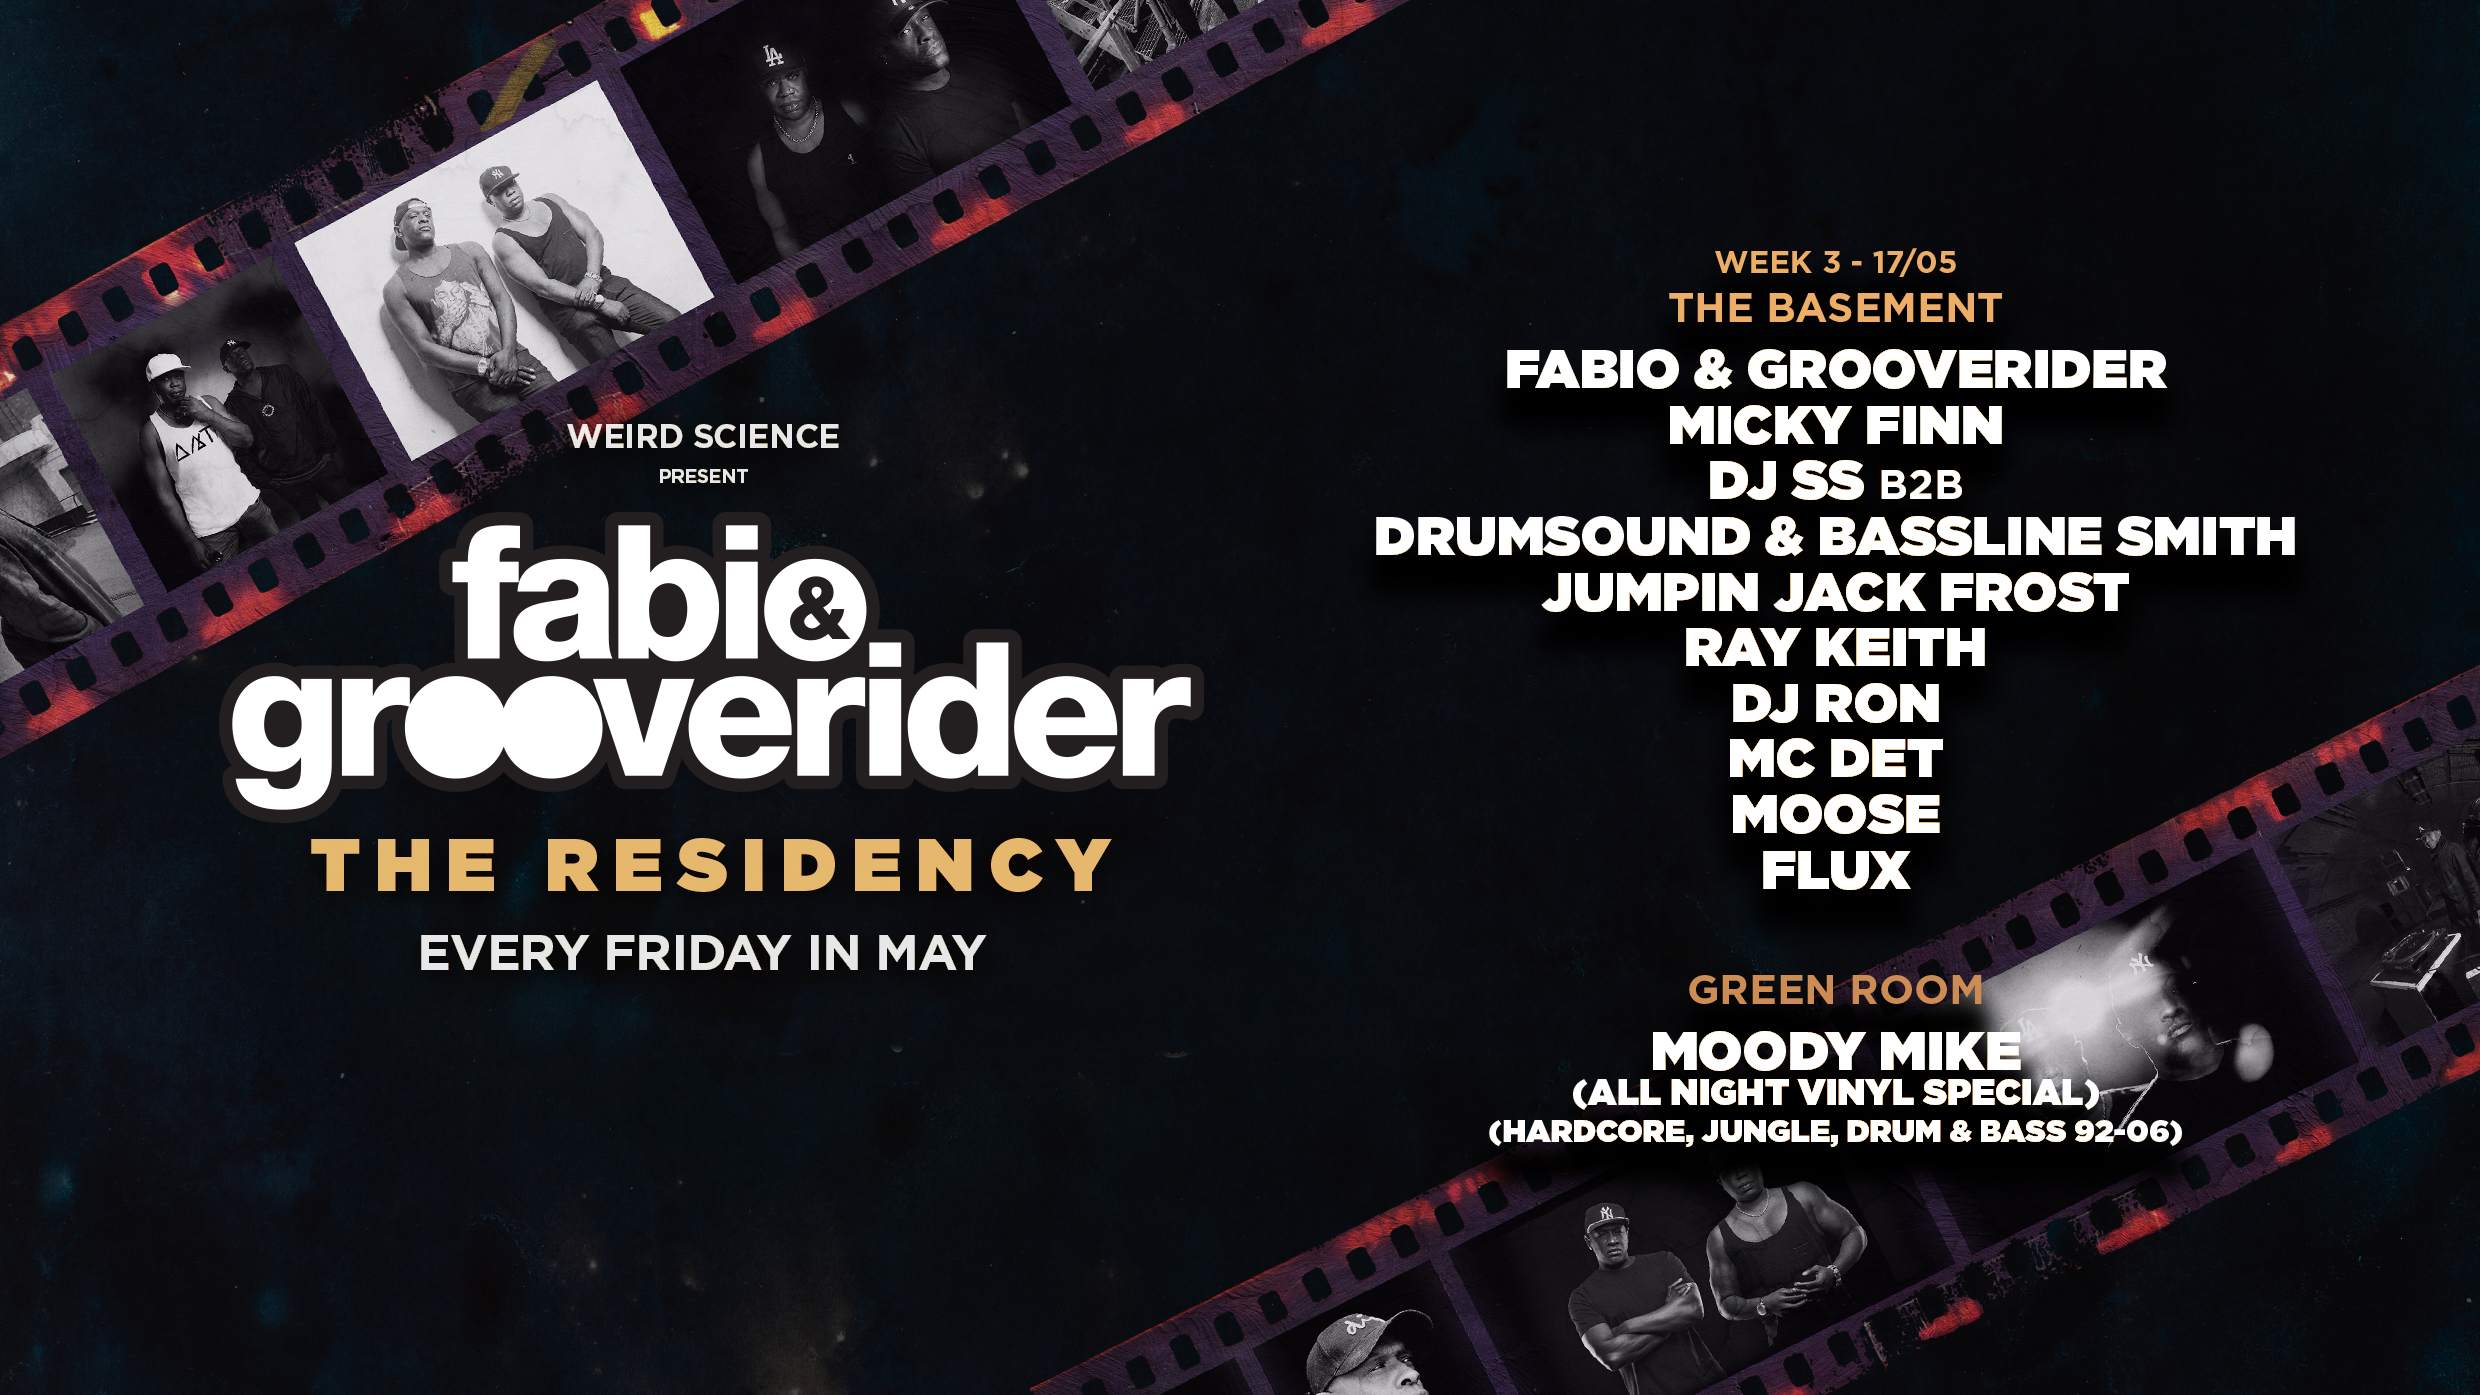 Fabio & Grooverider : The Residency (Week 3) - Página frontal